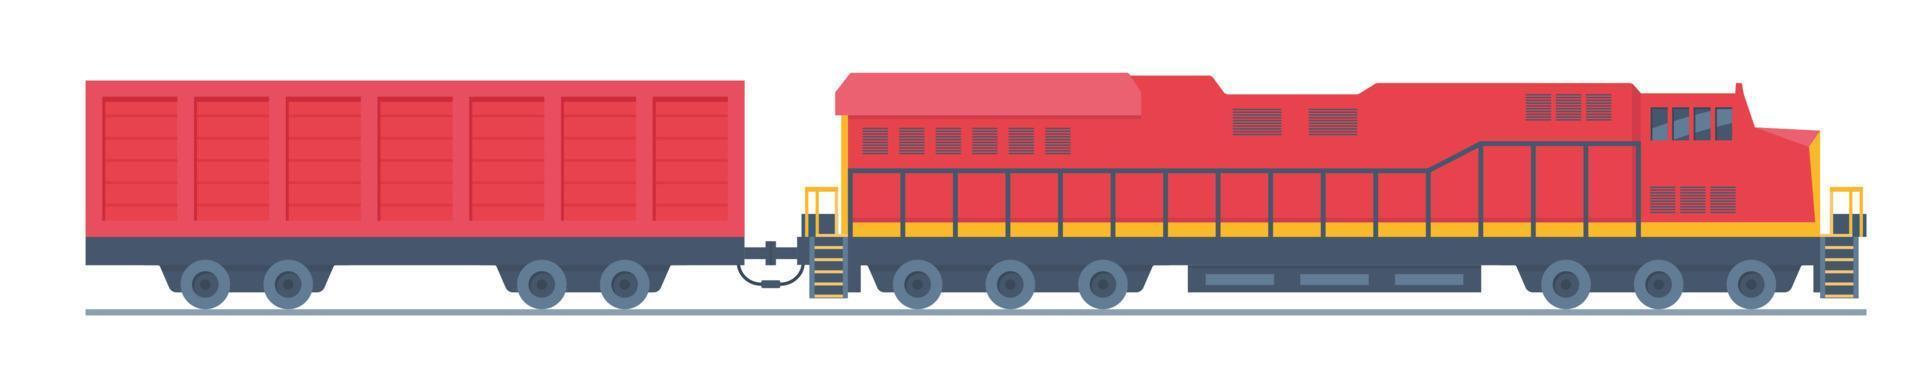 vracht trein. spoorweg locomotief en wagon , vervoer lading. lading trein. modern vracht verkeer vector vlak illustratie.